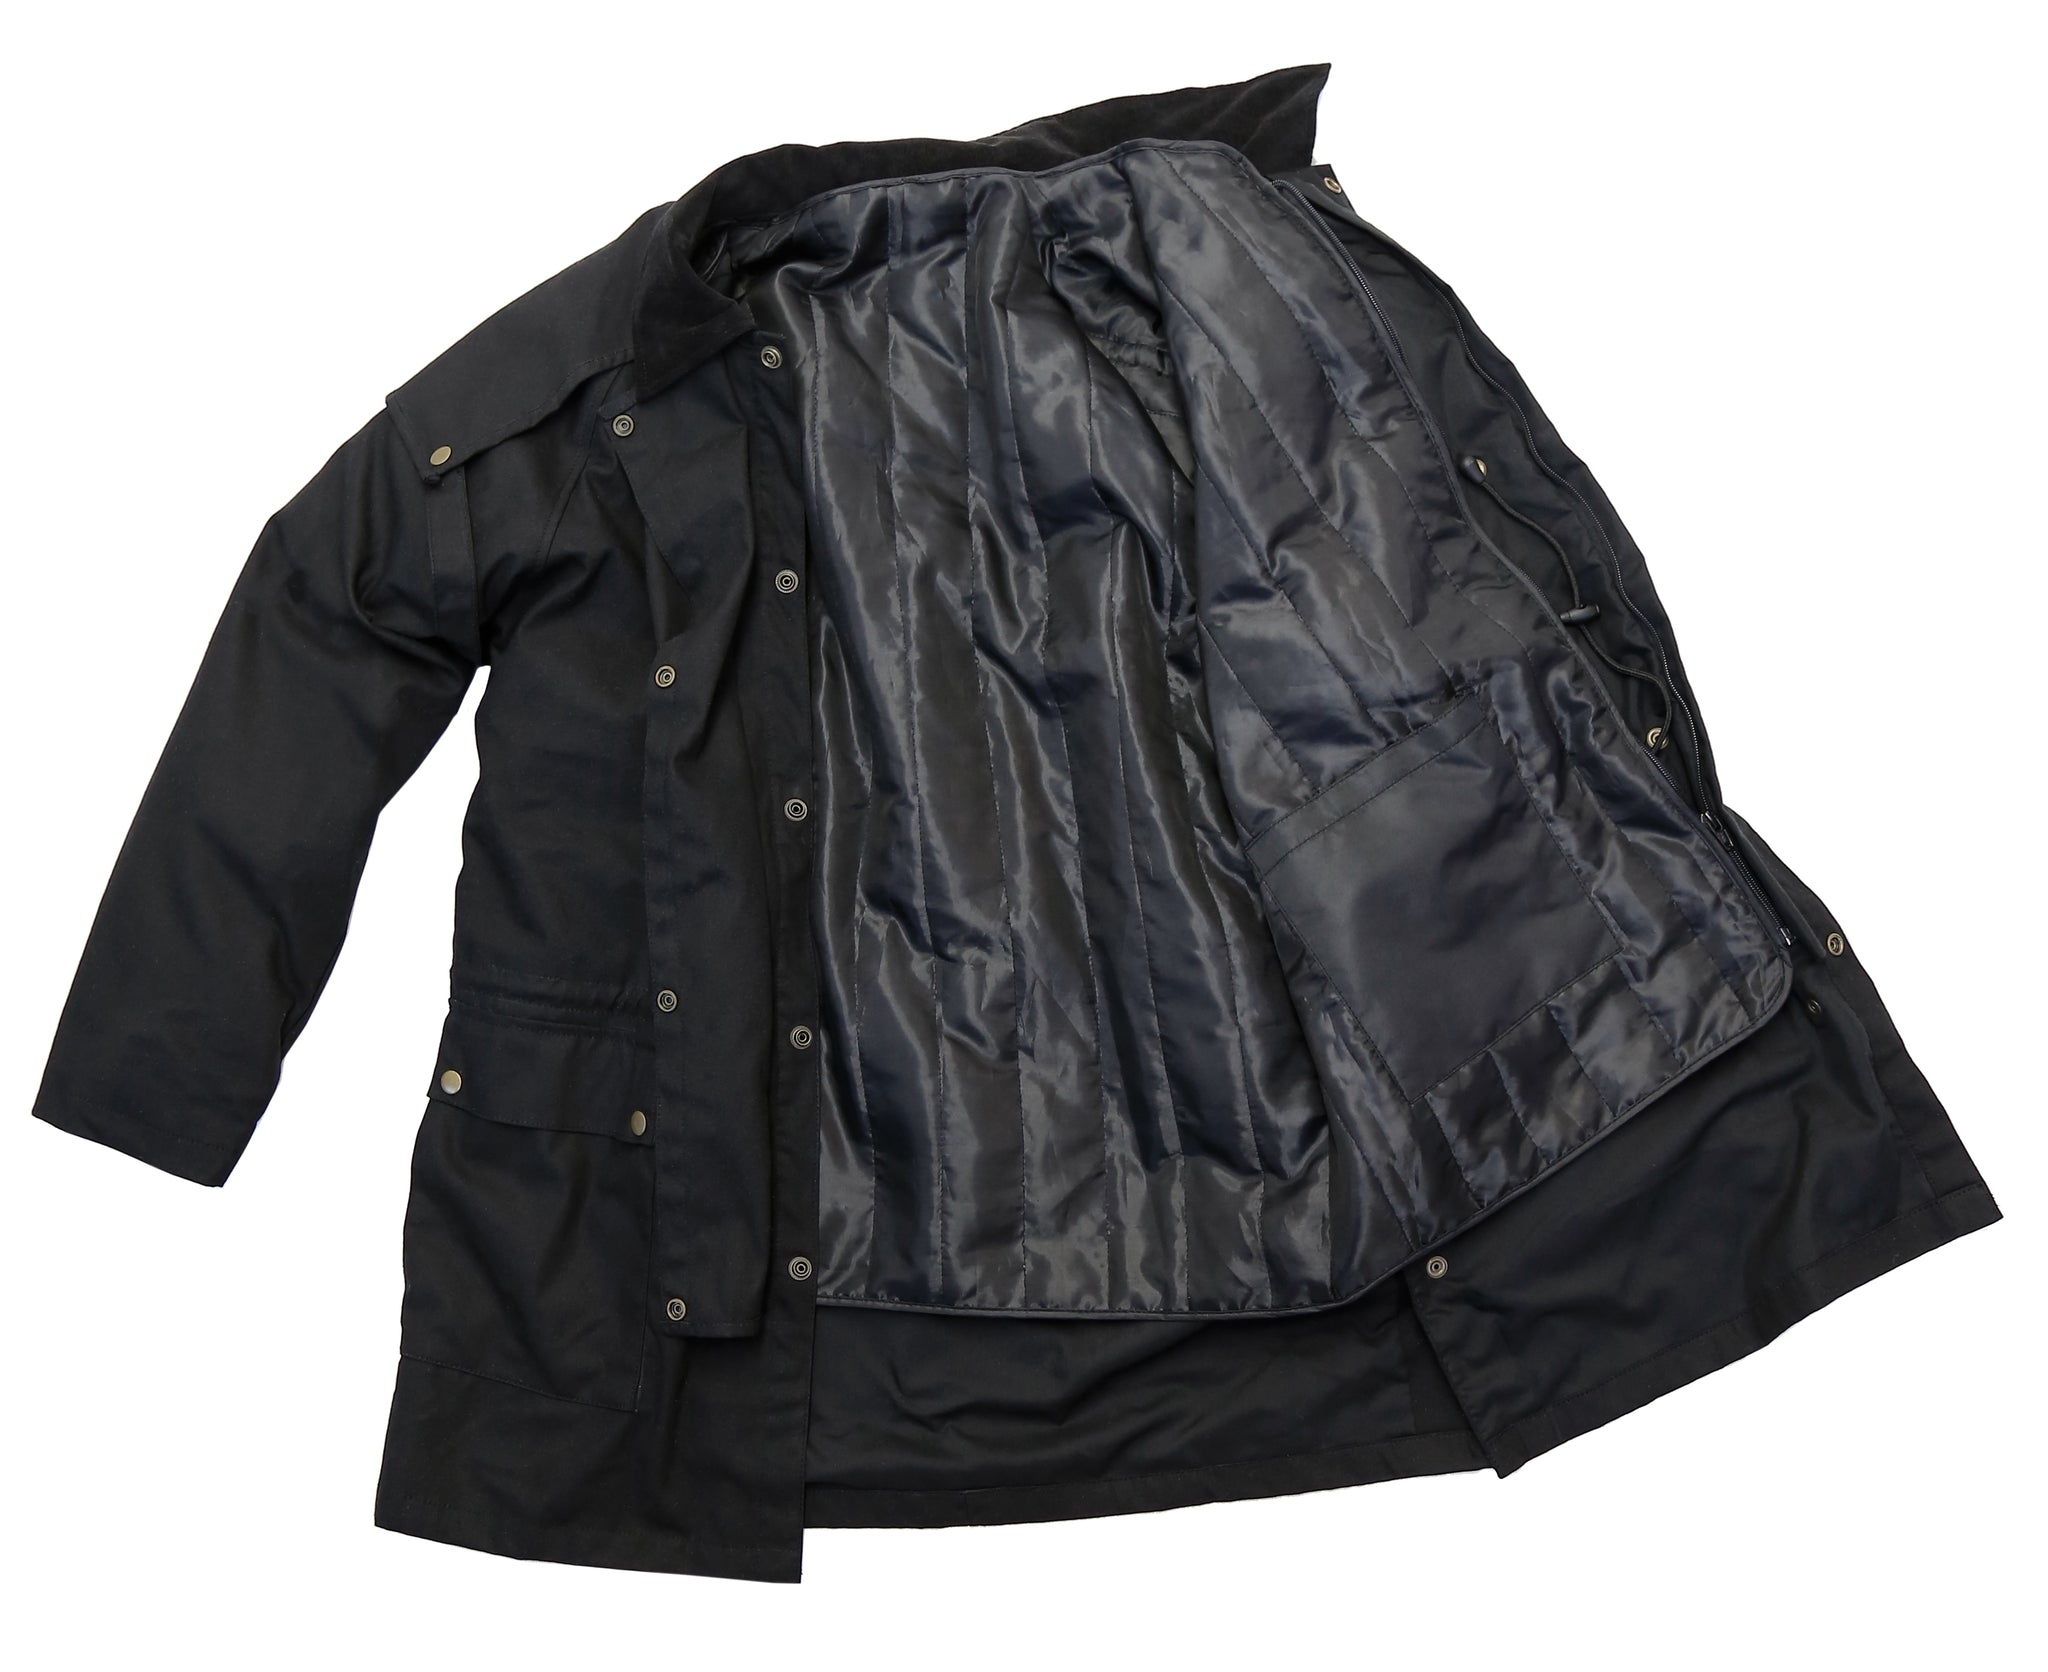 Grillig rit Dempsey Drover, Australische outdoor oilskin jas in het zwart – The King`s Elephant